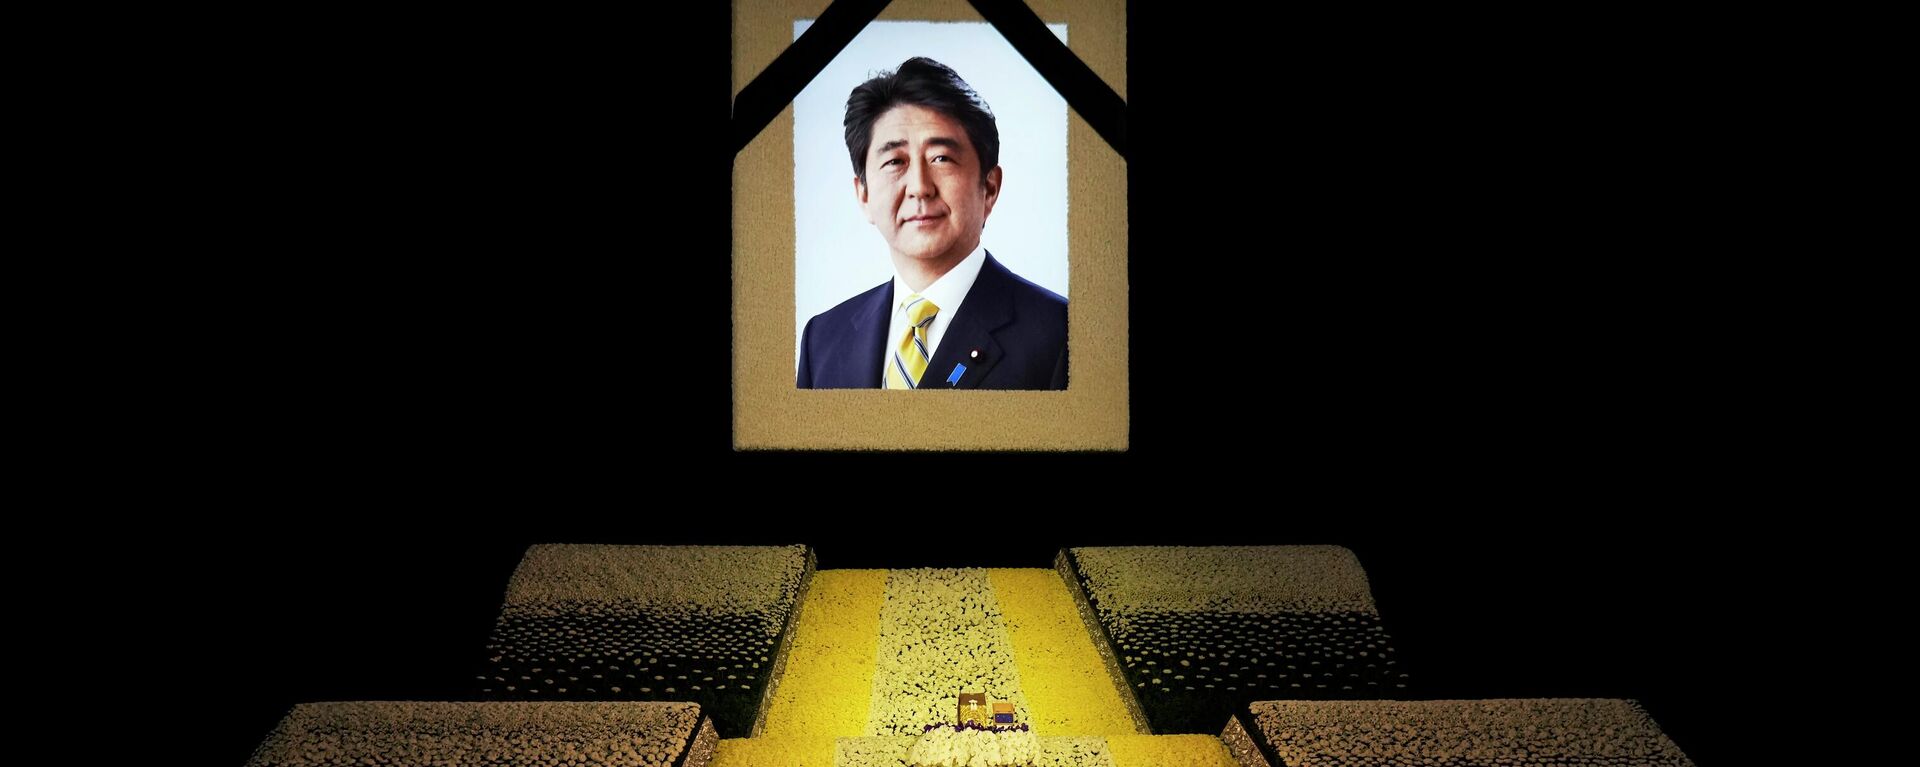 Государственные похороны экс-премьера Японии Синдзо Абэ в Токио  - Sputnik International, 1920, 27.09.2022